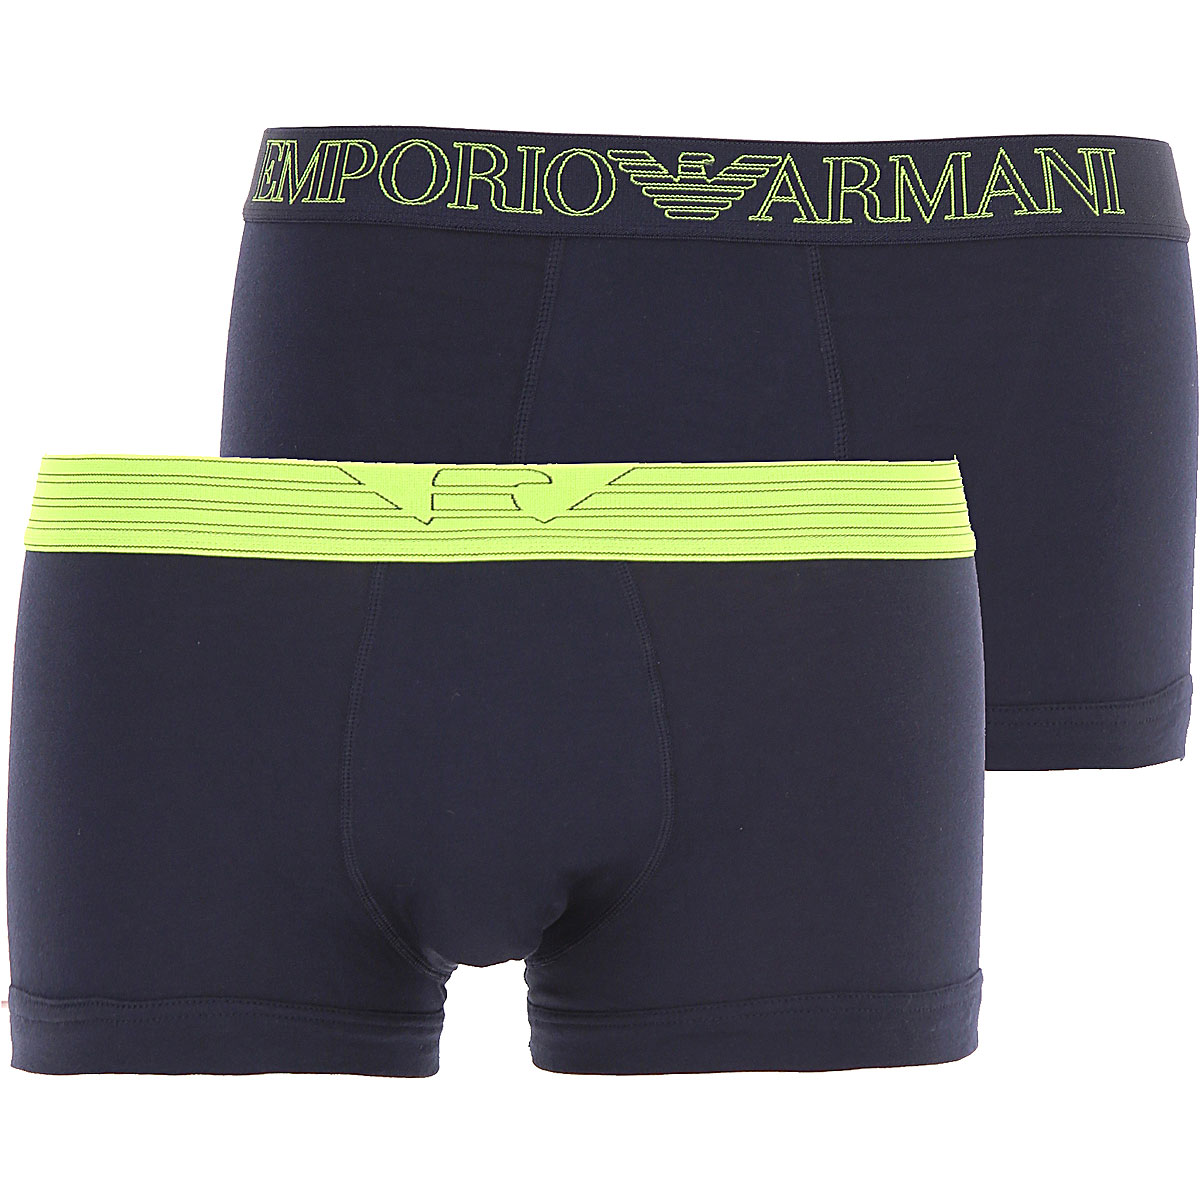 Emporio Armani Boxer Shorts für Herren, Unterhose, Short, Boxer Günstig im Outlet Sale, 2 Pack , Marineblau, Baumwolle, 2017, L M S